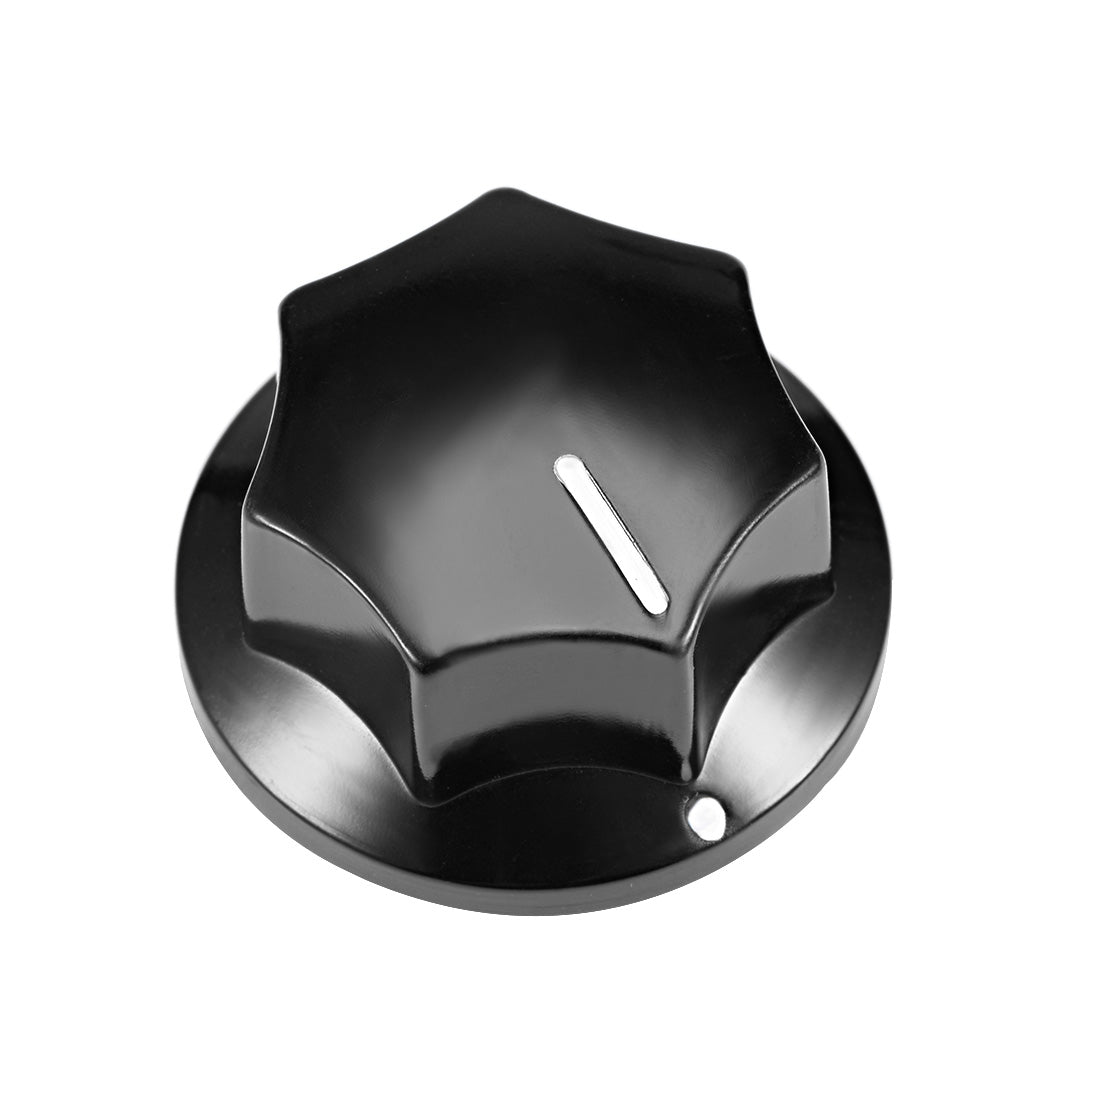 uxcell Uxcell 5Pcs 6mm Insert Shaft 33x17mm Plastic Potentiometer Rotary Knob Pots Black